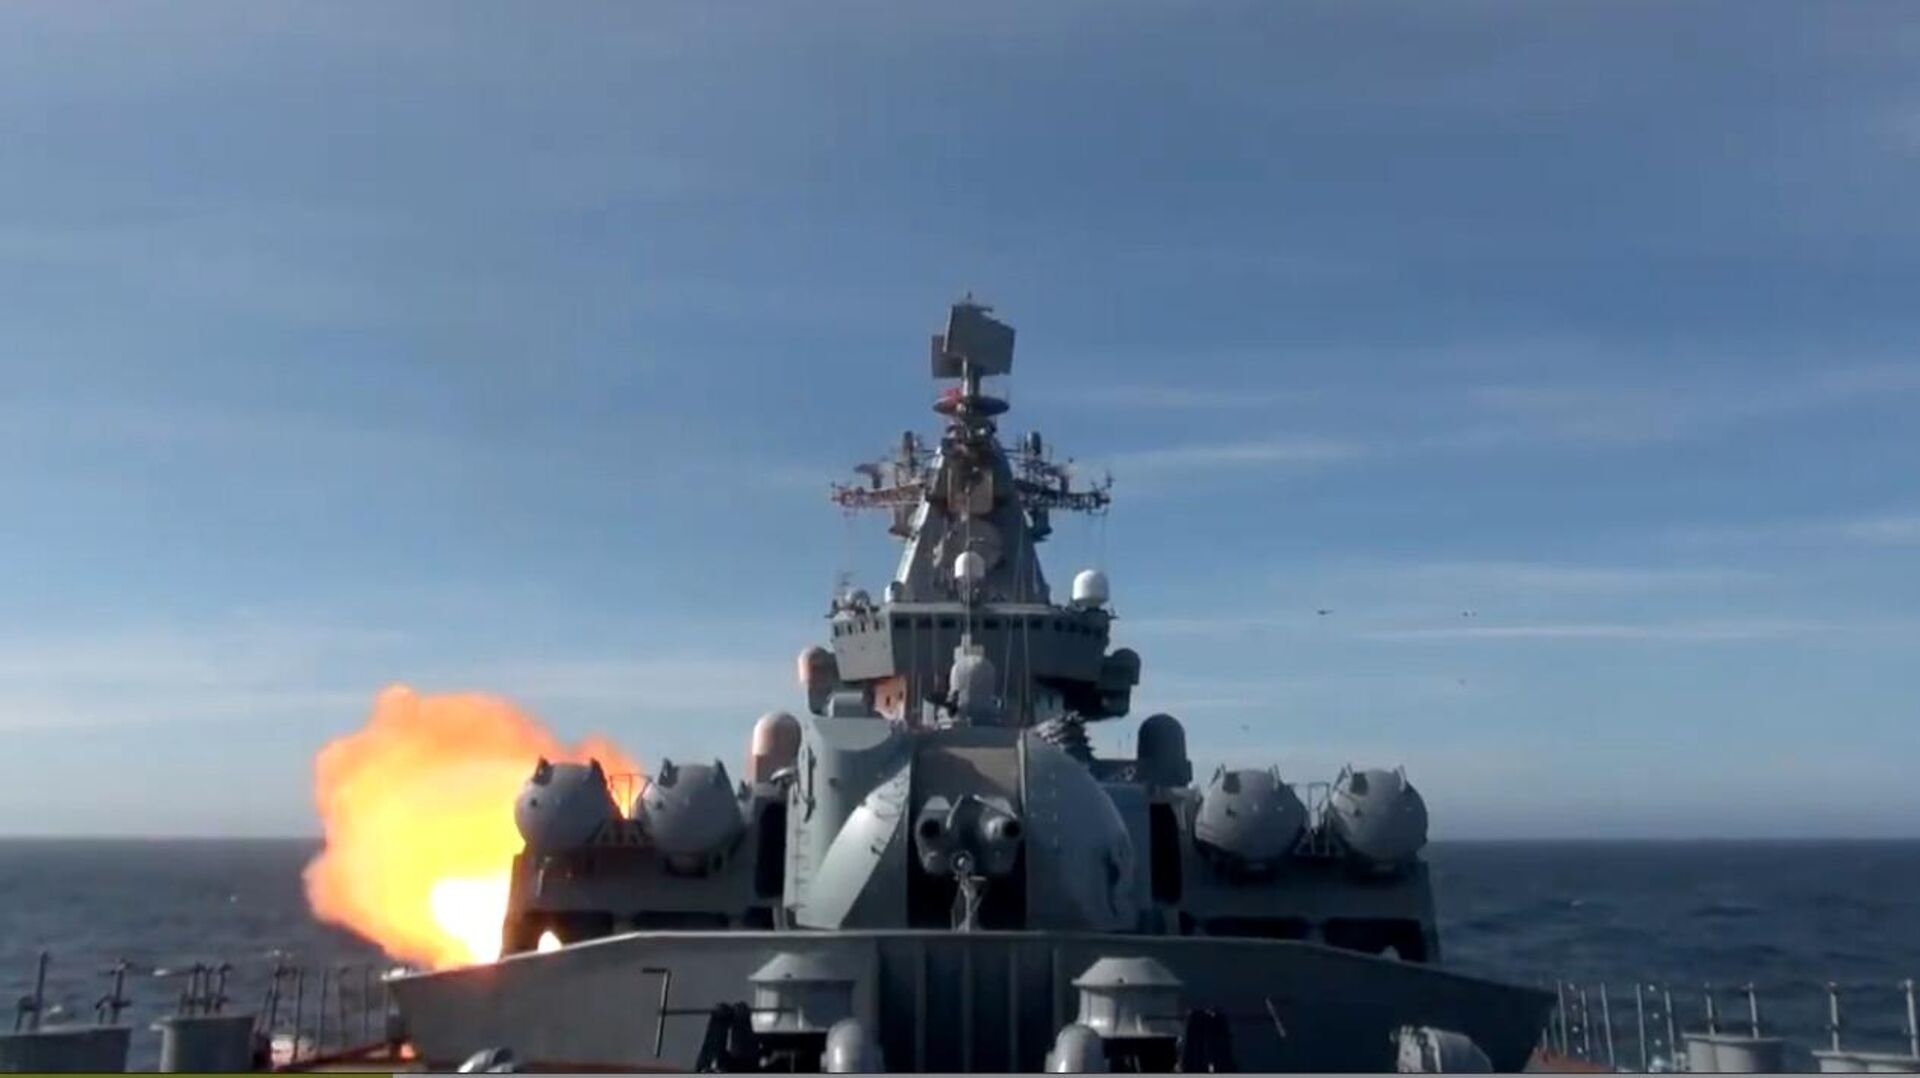 Гвардейский ракетный крейсер "Варяг" во время ракетной стрельбы